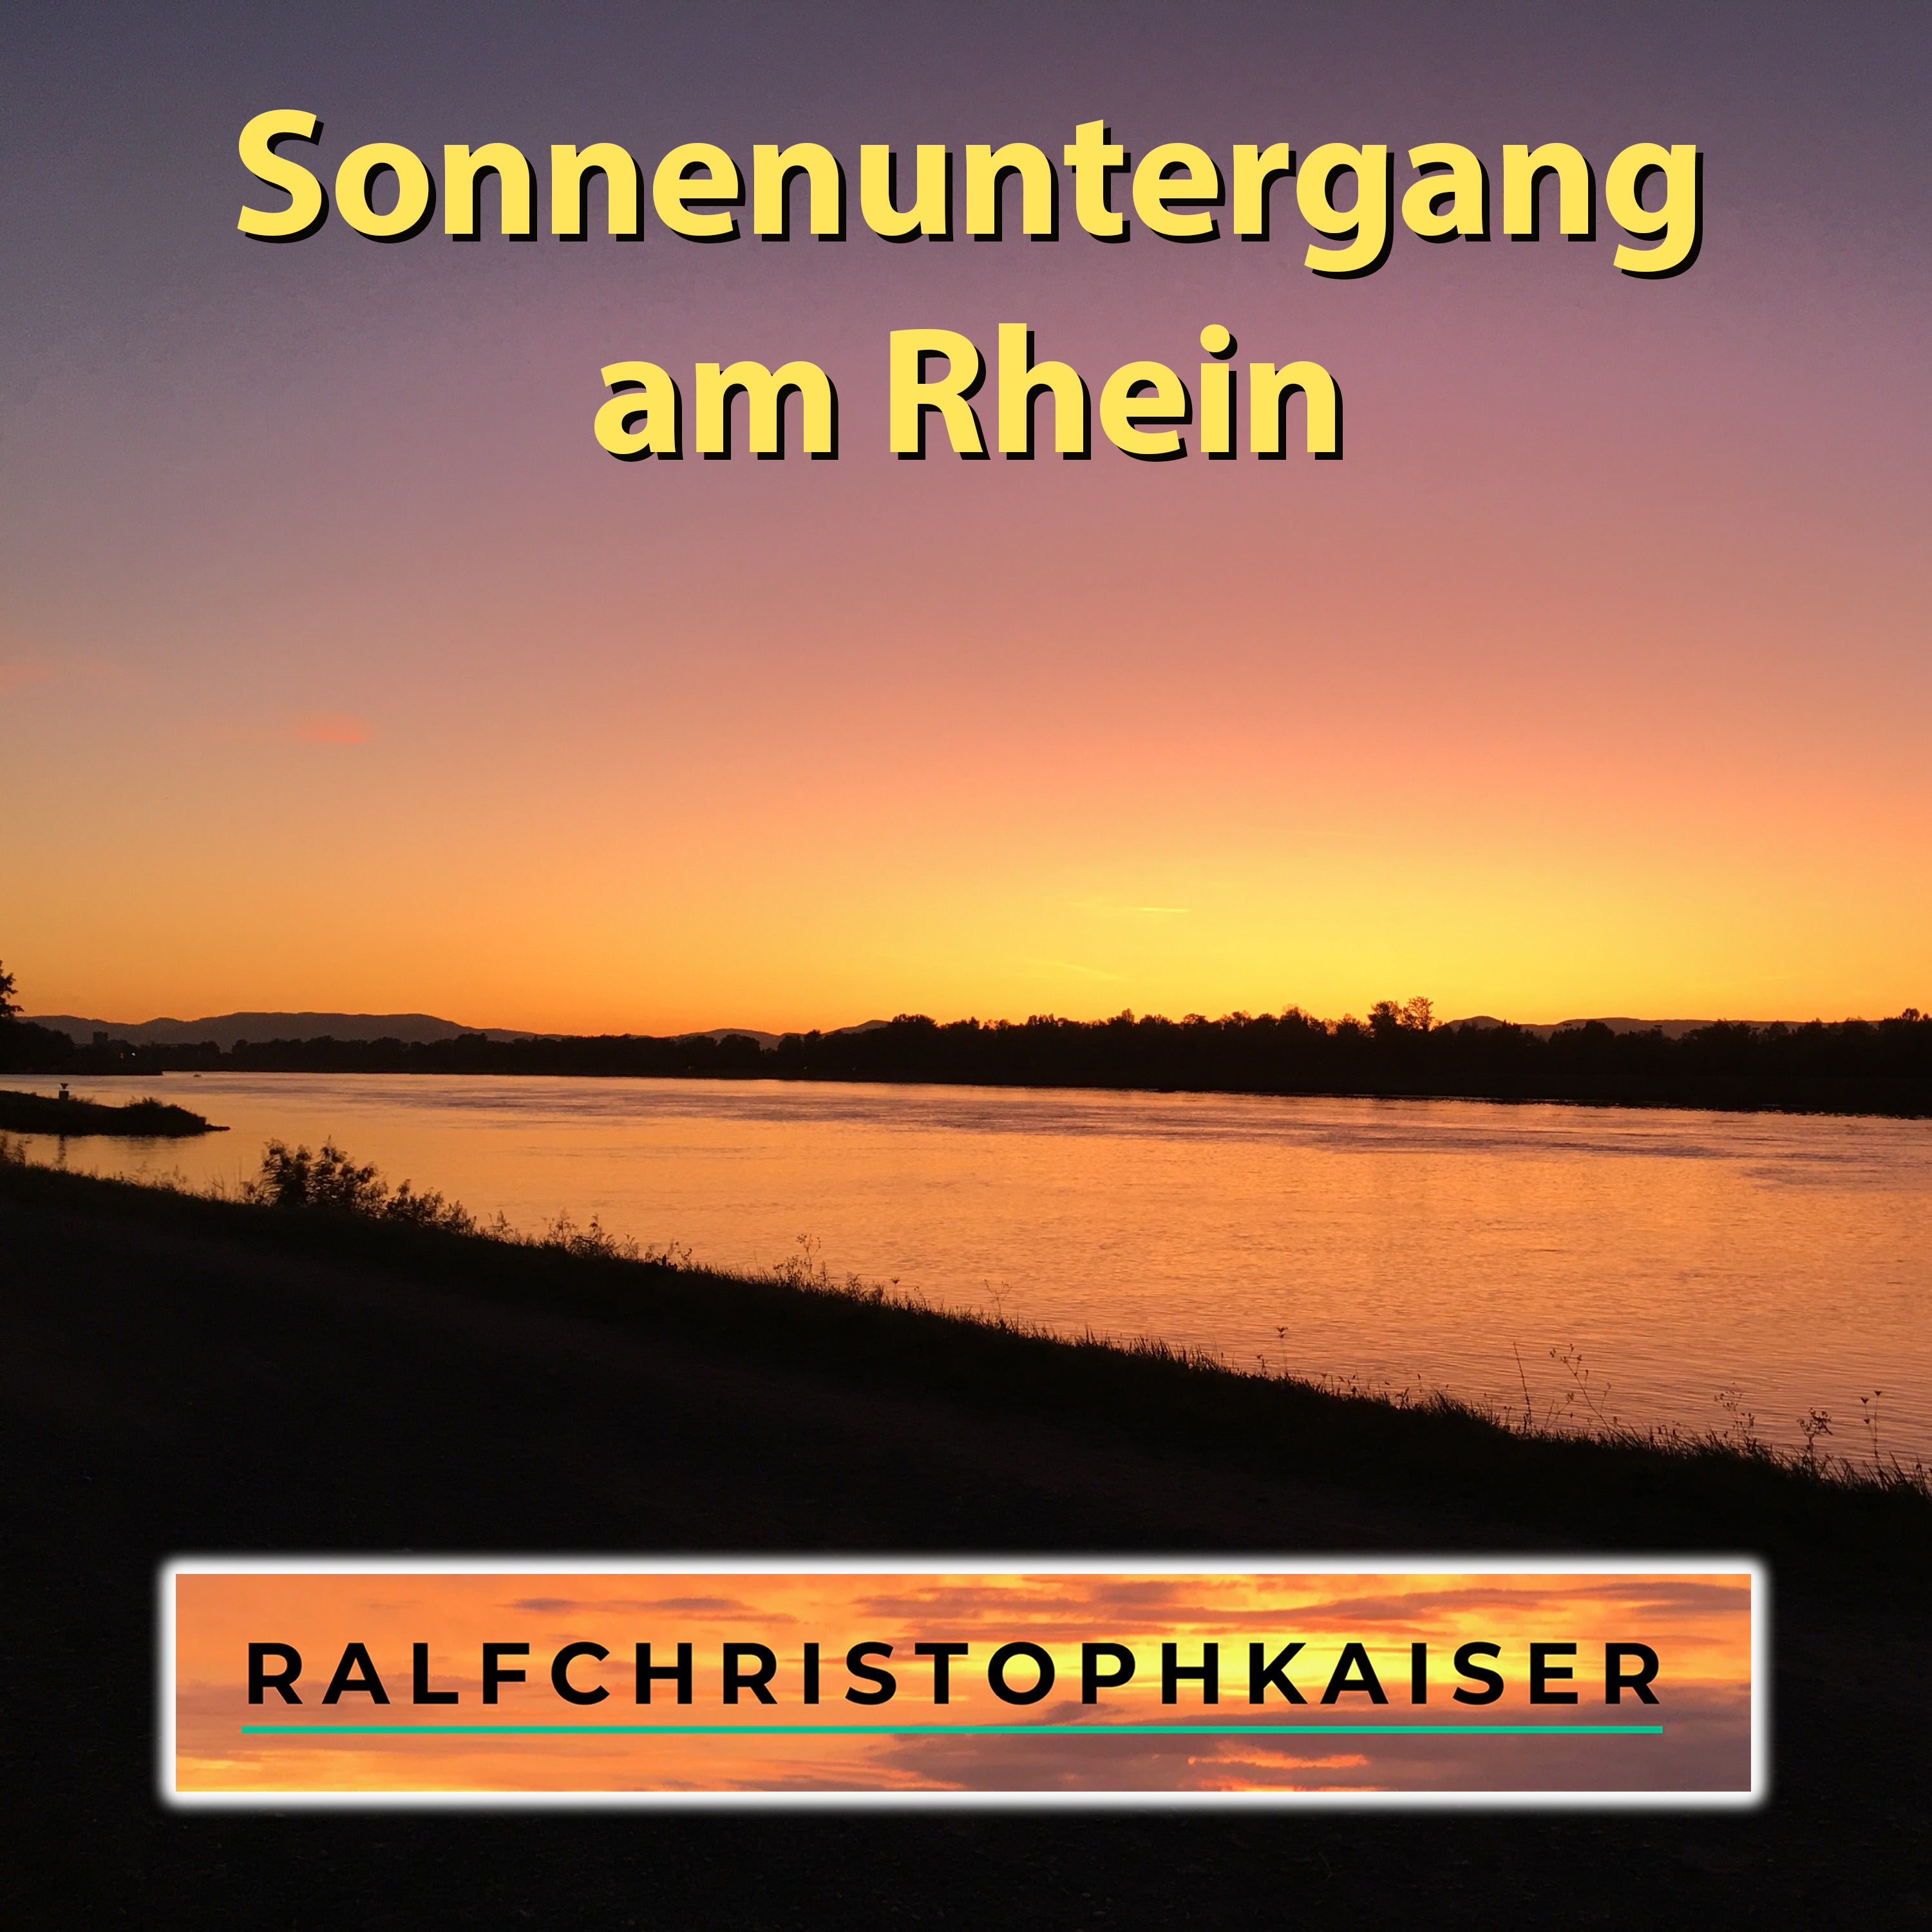 Sonnenuntergang am Rhein von Ralf Christoph Kaiser Surround Sound und Full HD Sound inklusive mp3 Version - ralfchristophkaiser.com Musik und Noten